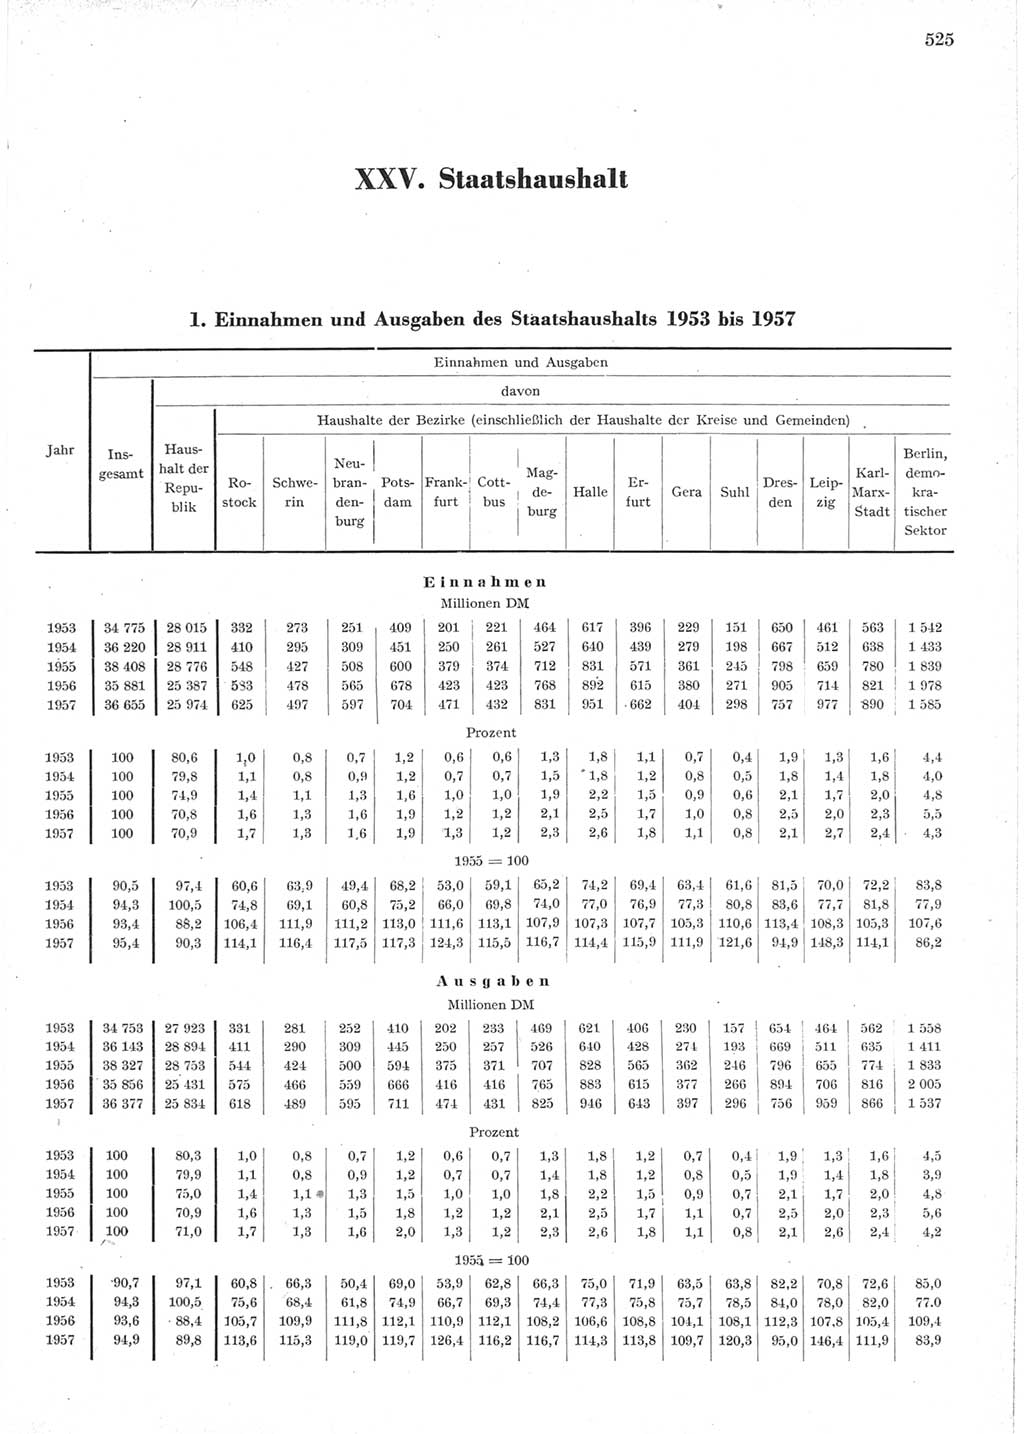 Statistisches Jahrbuch der Deutschen Demokratischen Republik (DDR) 1957, Seite 525 (Stat. Jb. DDR 1957, S. 525)